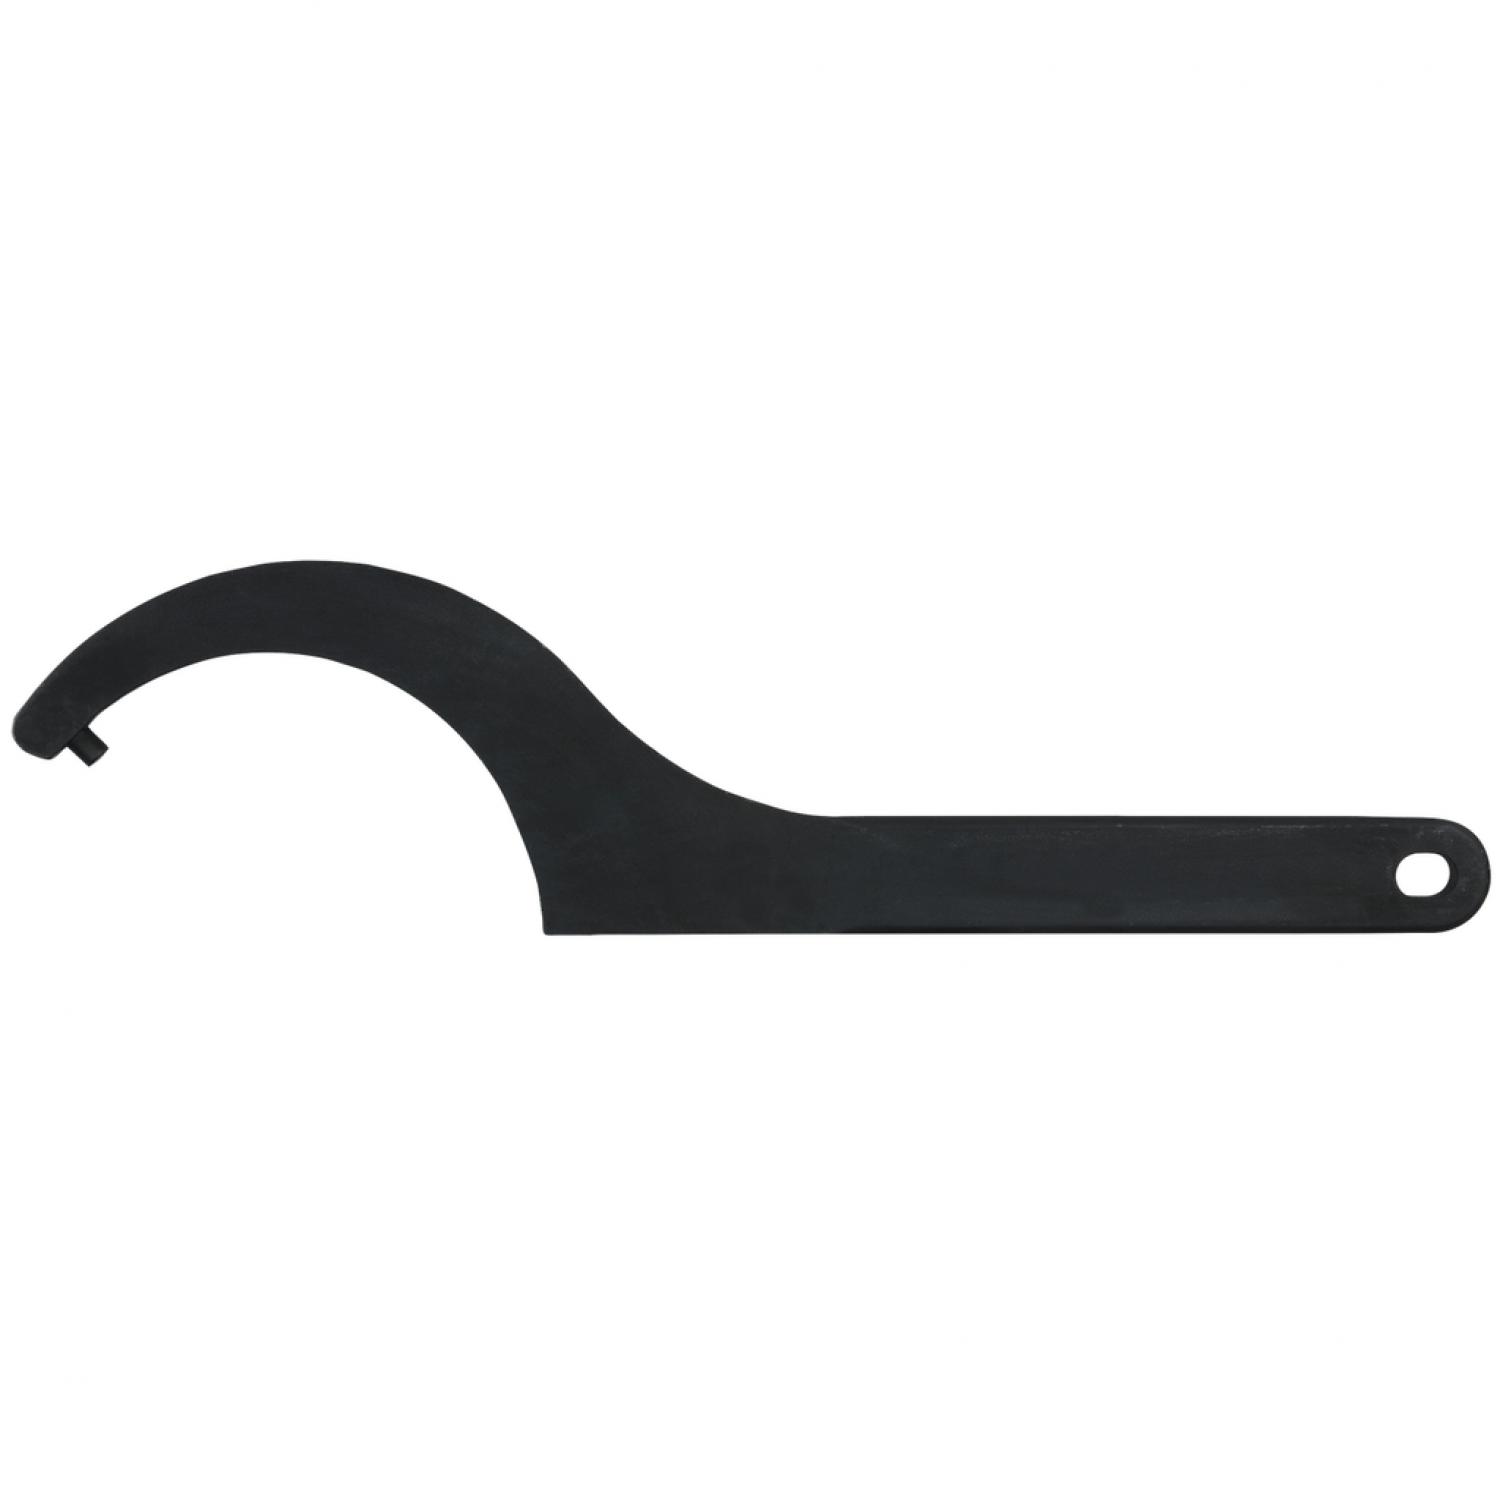 Прочный крючковый ключ с цапфами, 30-32 мм